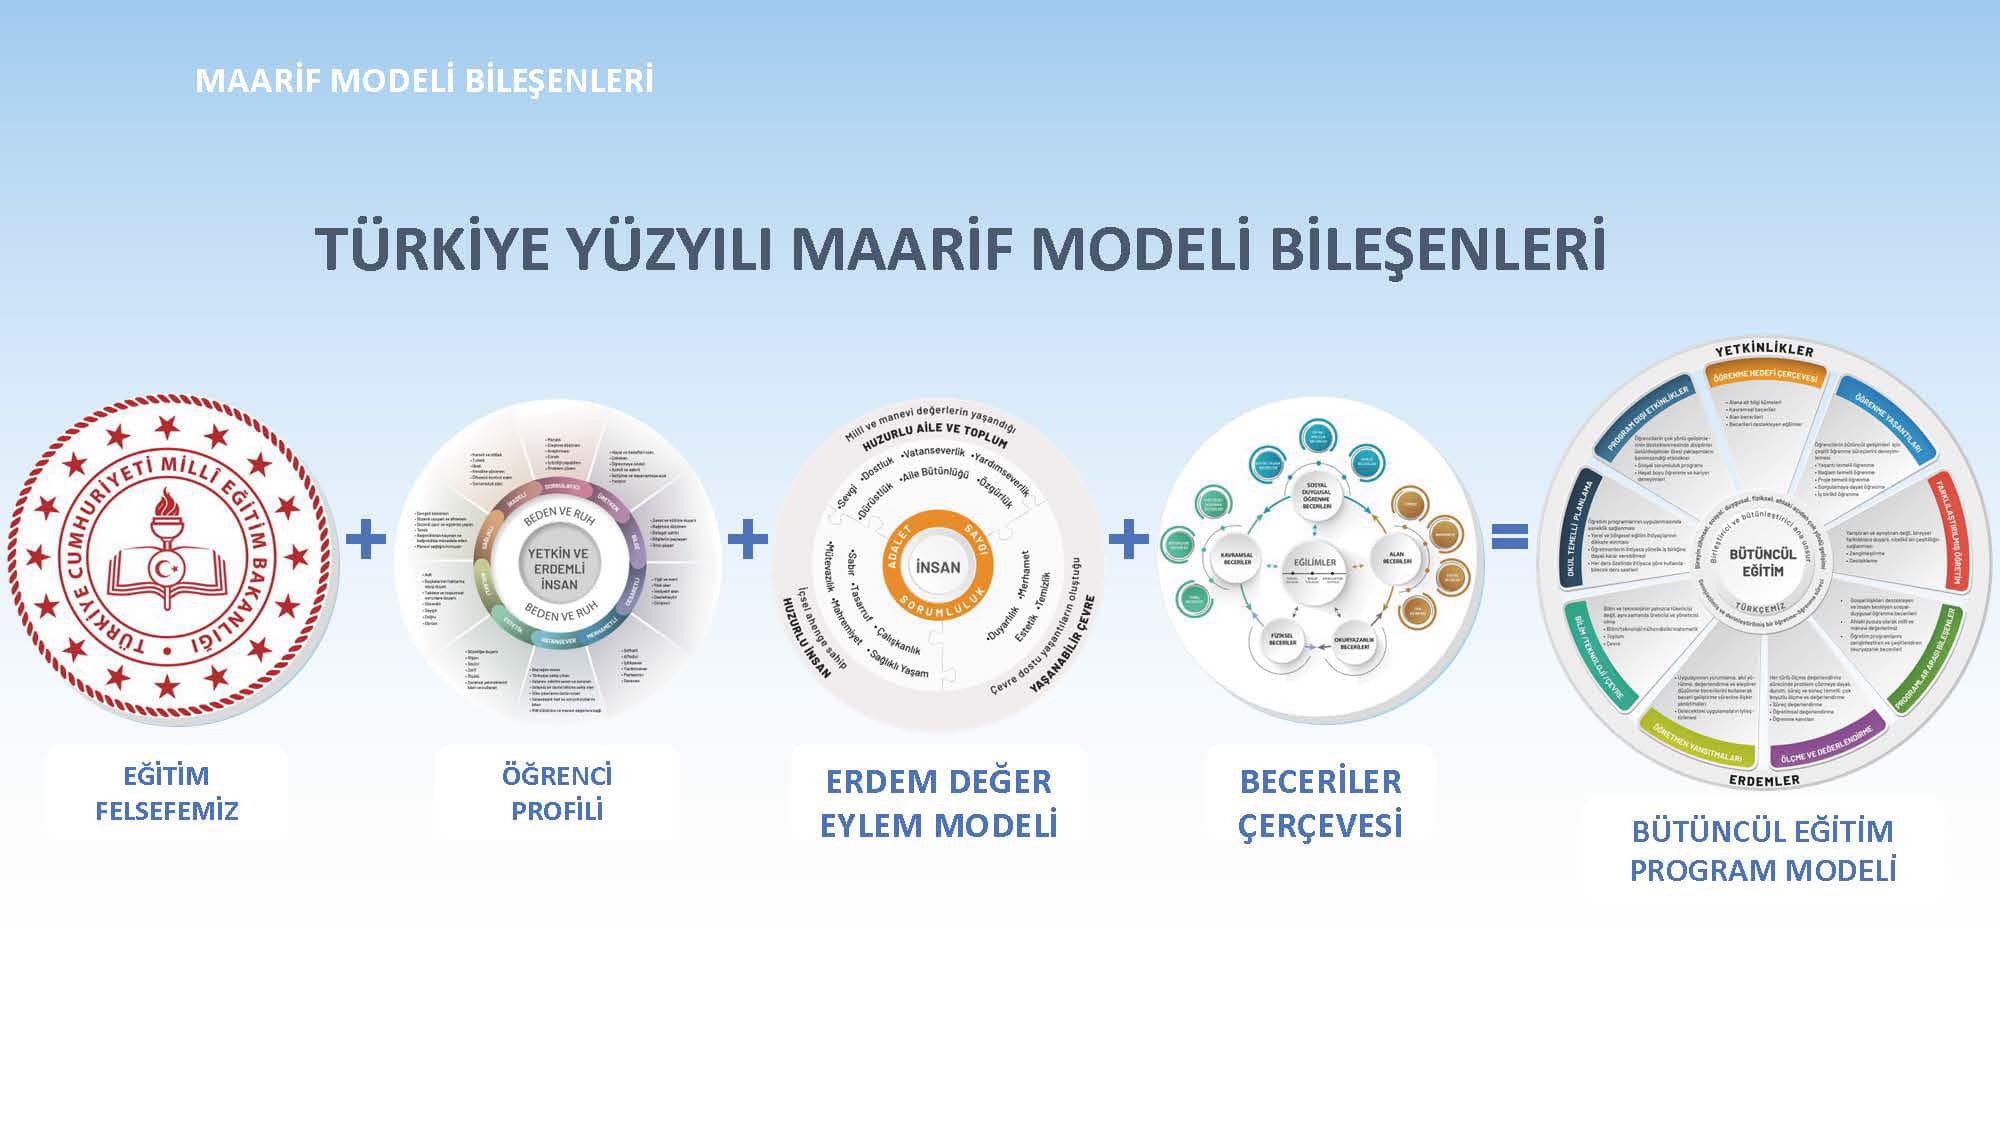 Eskişehir İl Milli Eğitim Müdürlüğü, Türkiye Yüzyılı Maarif Modeli'ni Tanıttı